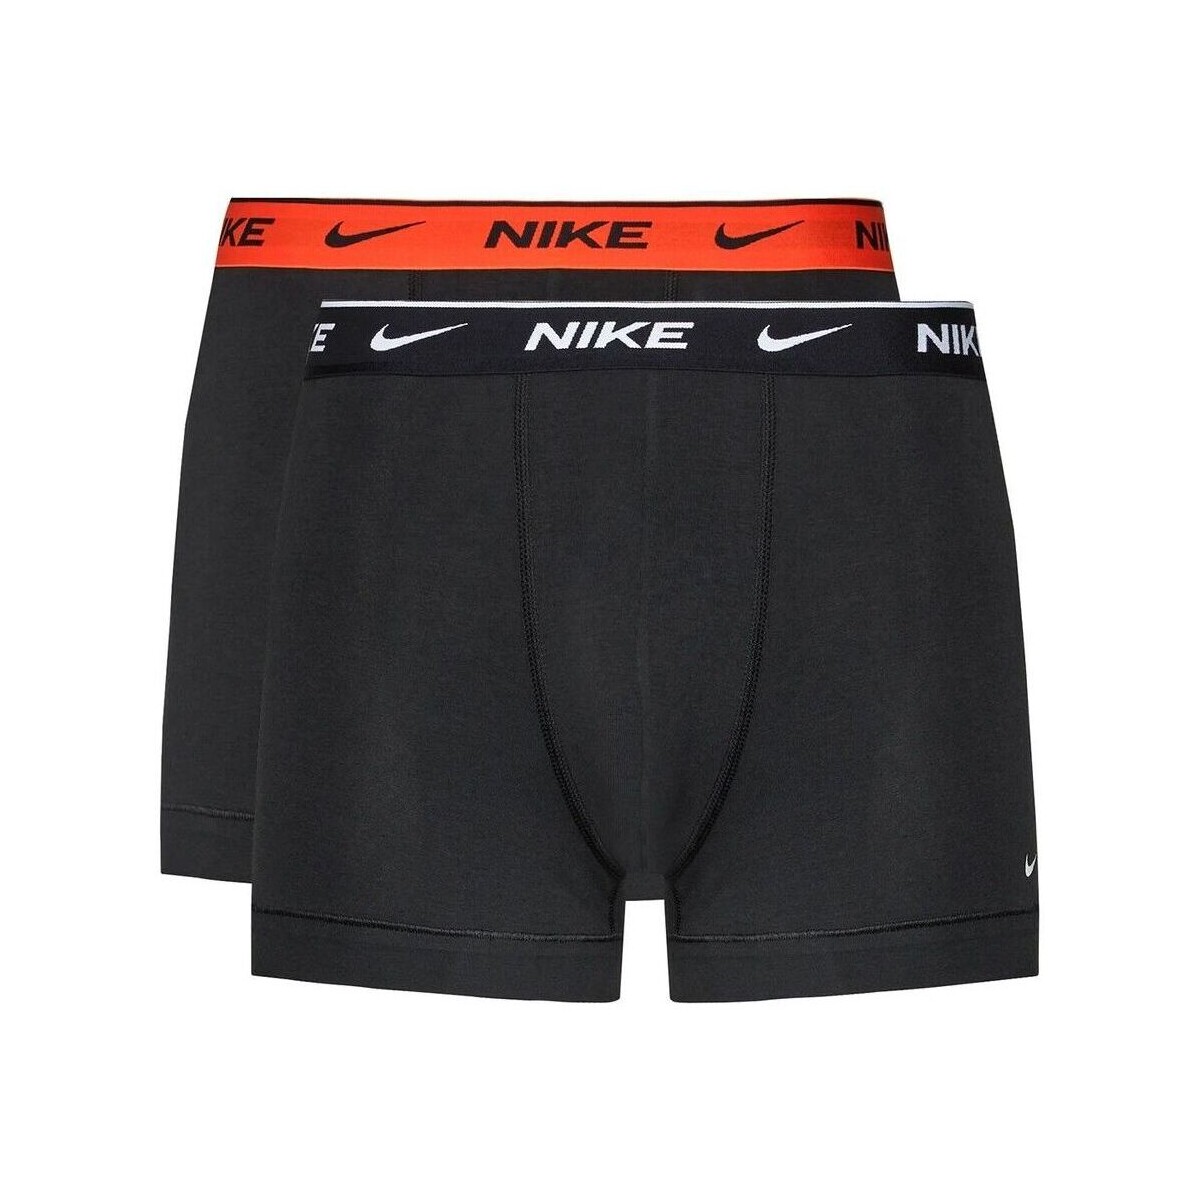 Sous-vêtements Homme Boxers Nike - 0000ke1085- Noir